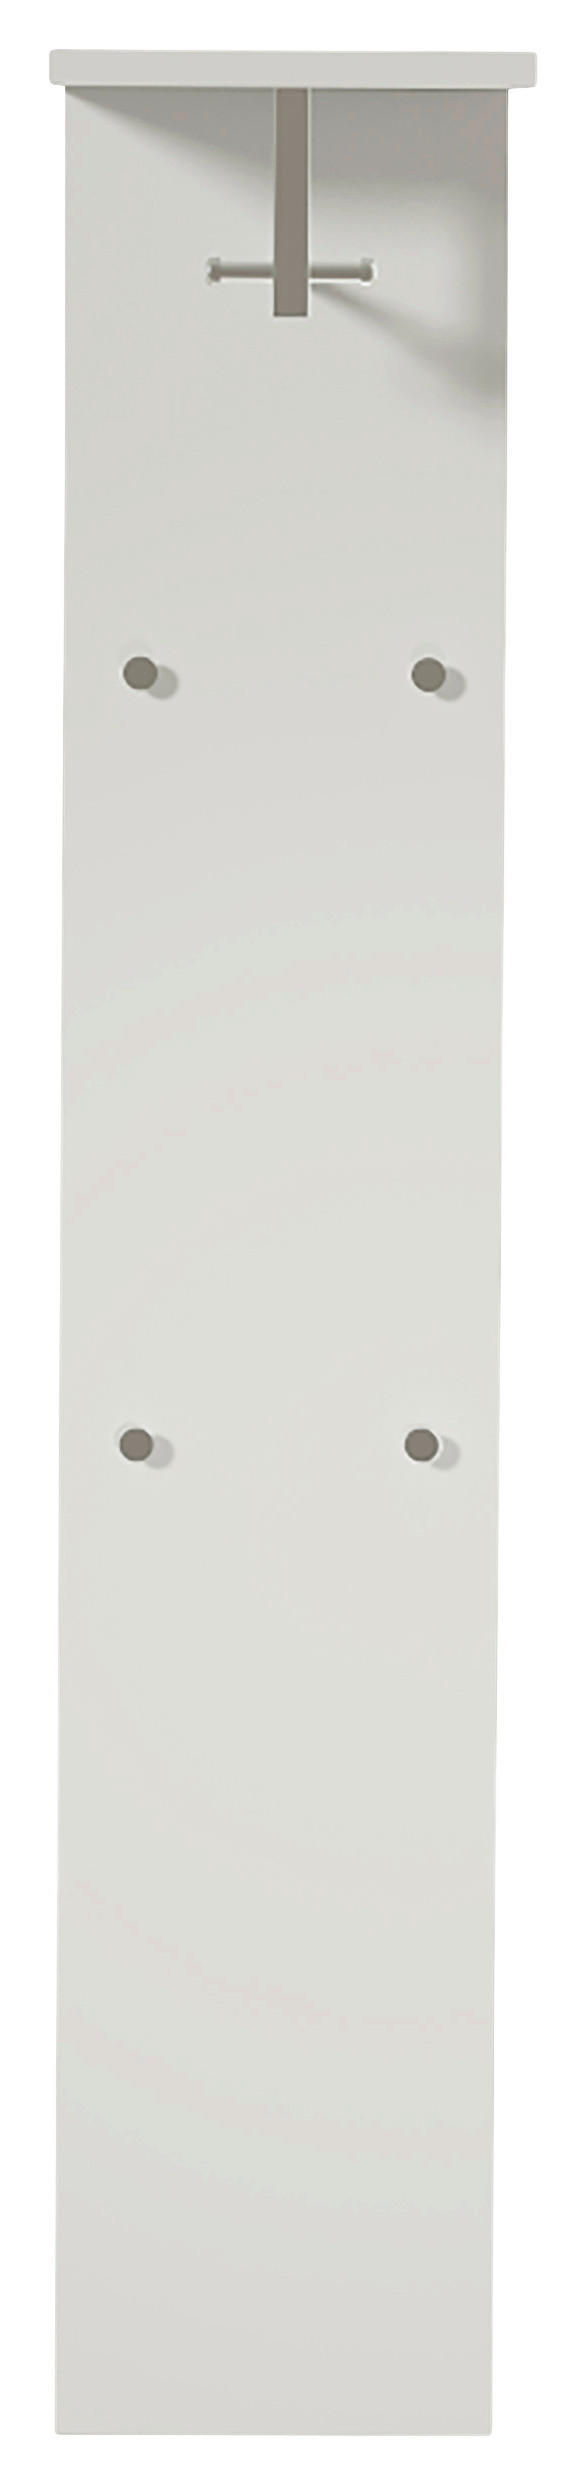 GARDEROBENPANEEL Weiß, Chromfarben  - Chromfarben/Weiß, Design, Metall (33/167/31cm) - Moderano